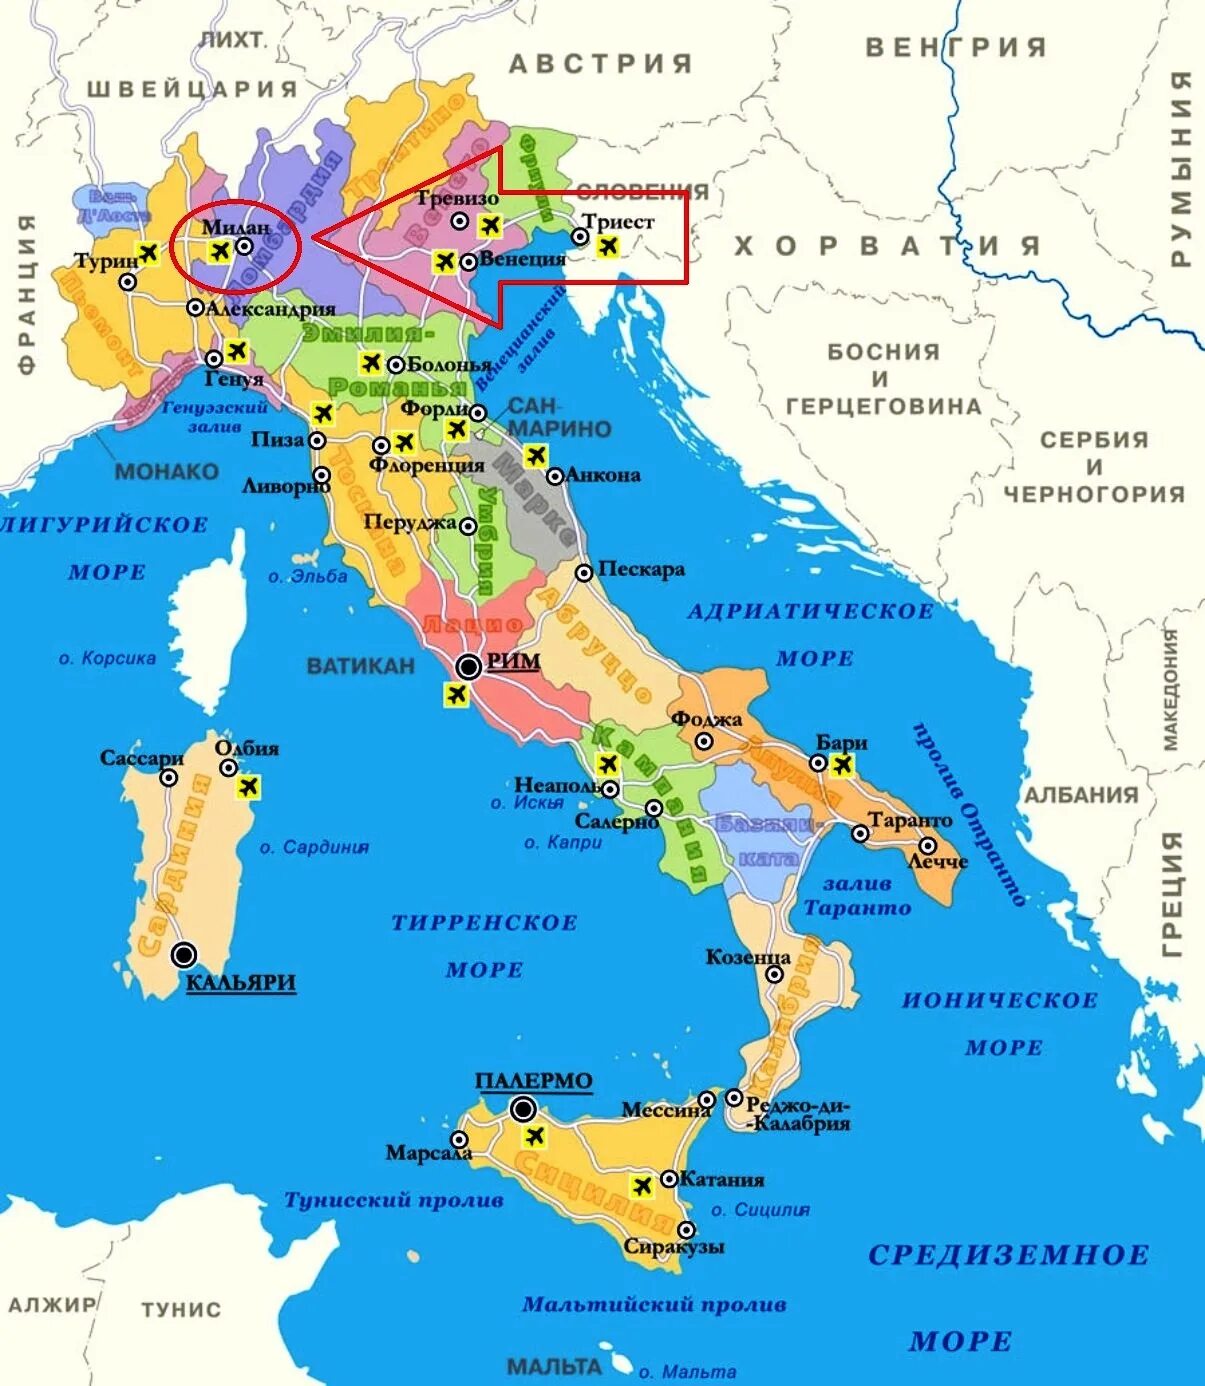 Италия страна на карте. Аэропорты Италии на карте. Тоскана на карте Италии. Карта Италии на русском с городами и курортами. Географическое положение Италии на карте.